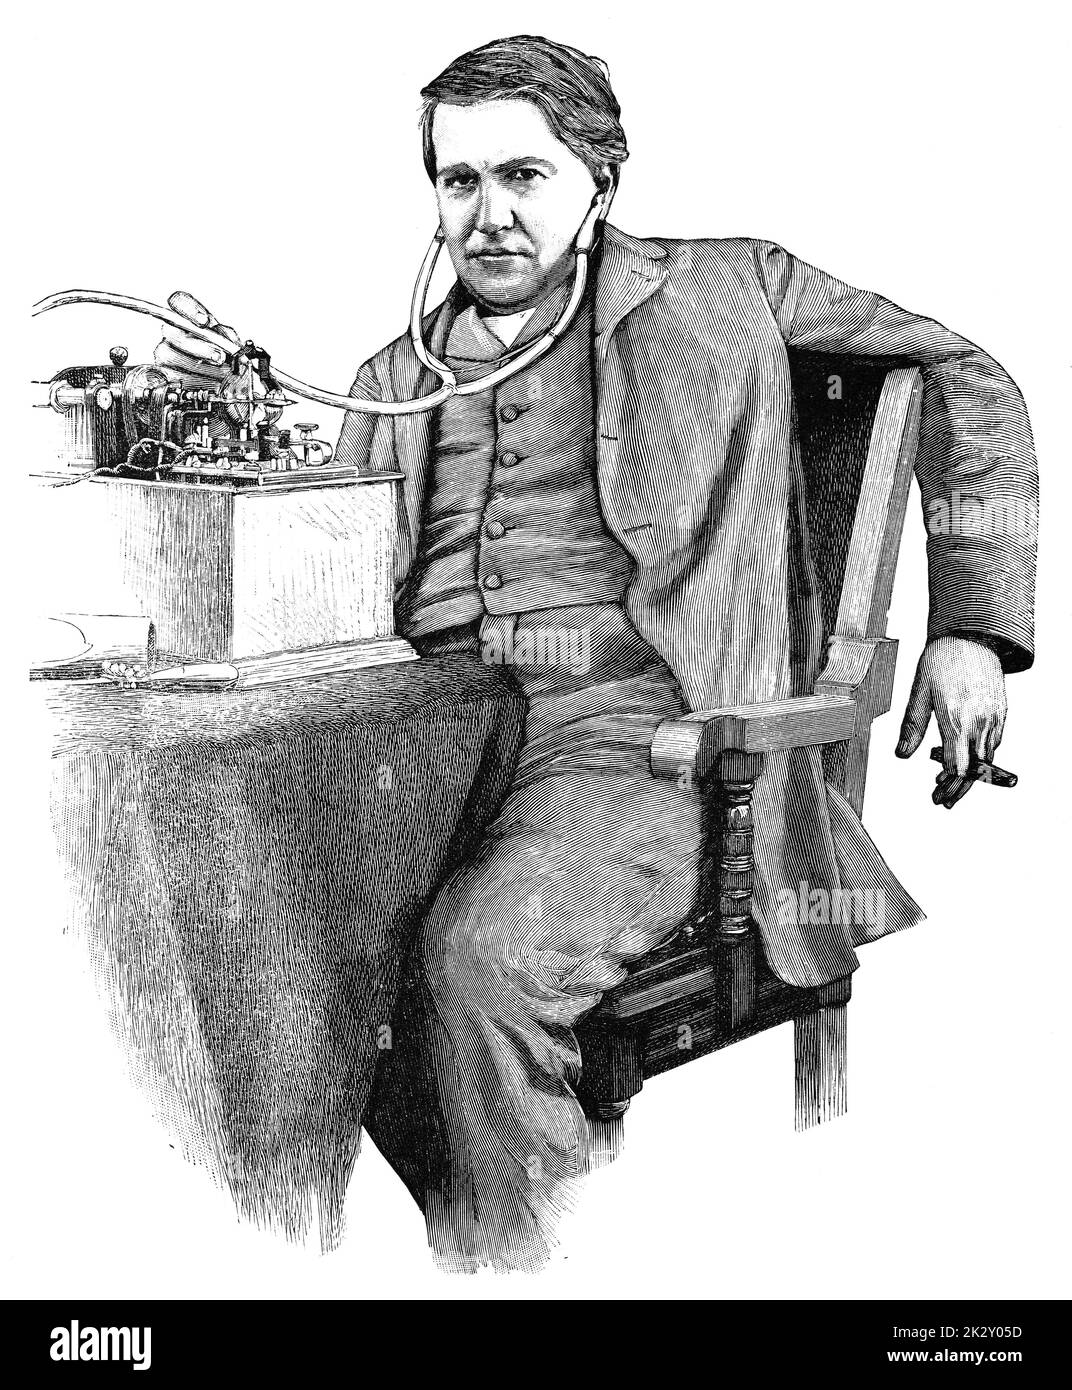 Portrait de Thomas Alva Edison - un inventeur et homme d'affaires américain qui a été décrit comme le plus grand inventeur de l'Amérique. Illustration du 19e siècle. Allemagne. Arrière-plan blanc. Banque D'Images